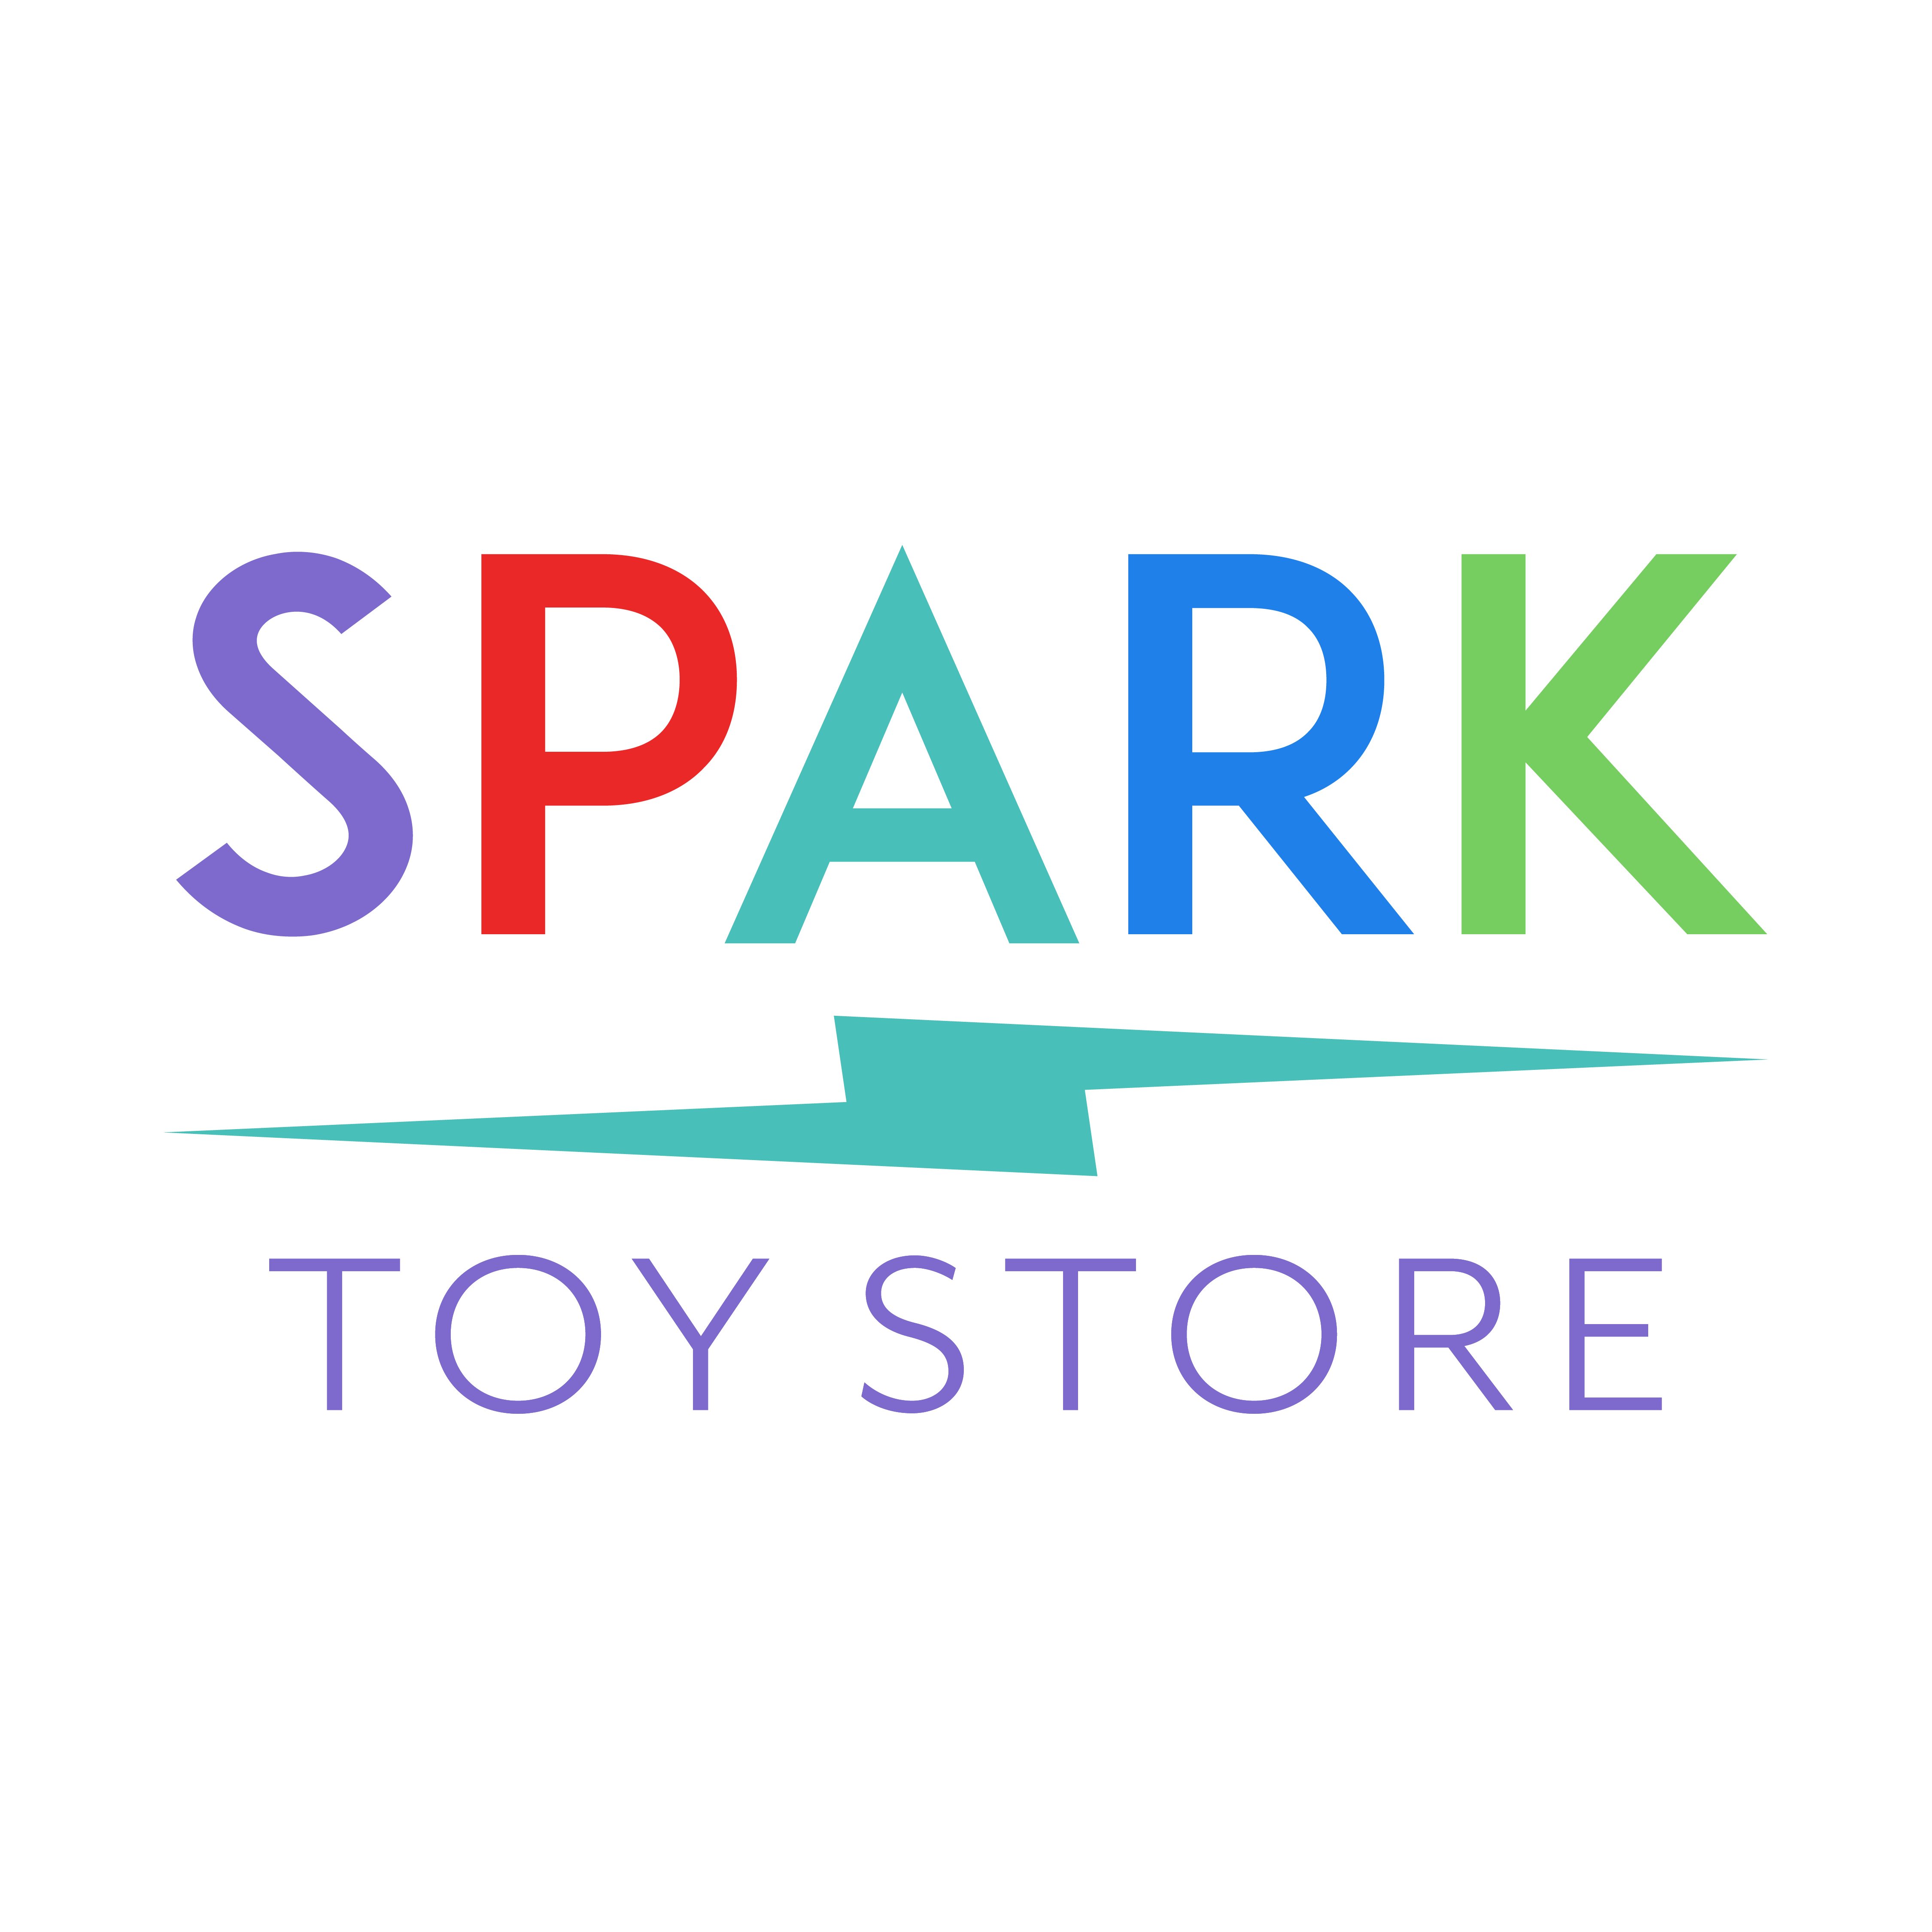 Spark Toys